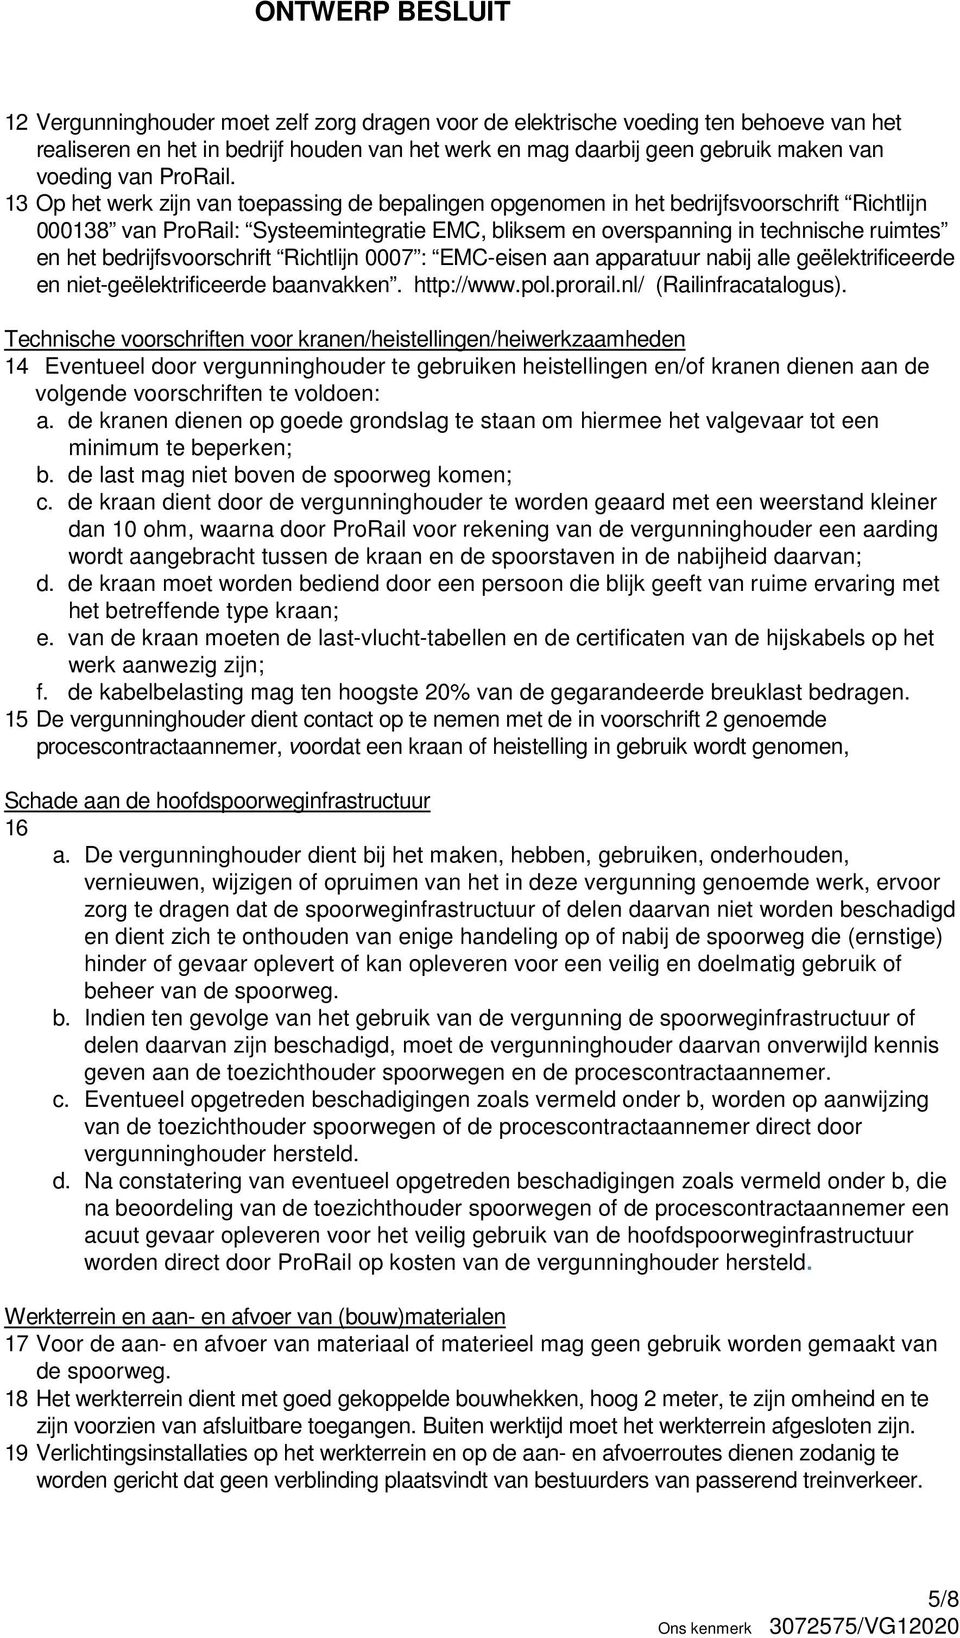 bedrijfsvoorschrift Richtlijn 0007 : EMC-eisen aan apparatuur nabij alle geëlektrificeerde en niet-geëlektrificeerde baanvakken. http://www.pol.prorail.nl/ (Railinfracatalogus).